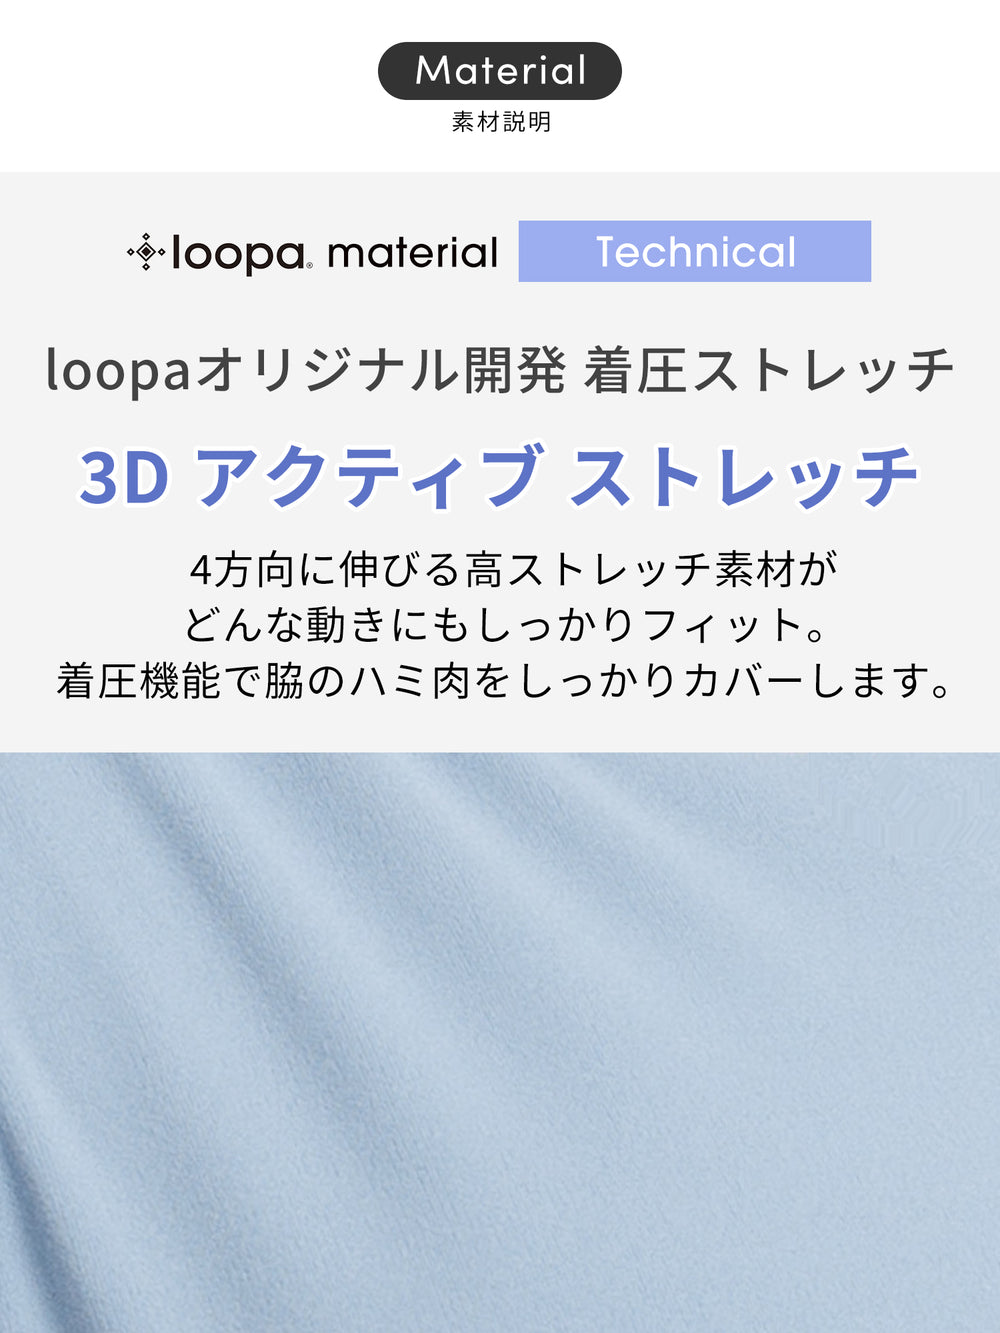 [Loopa] 3D ダブルクロスバック ブラトップ / ヨガウェア インナー スポーツブラ カップ付き 23SS - Puravida!プラヴィダ